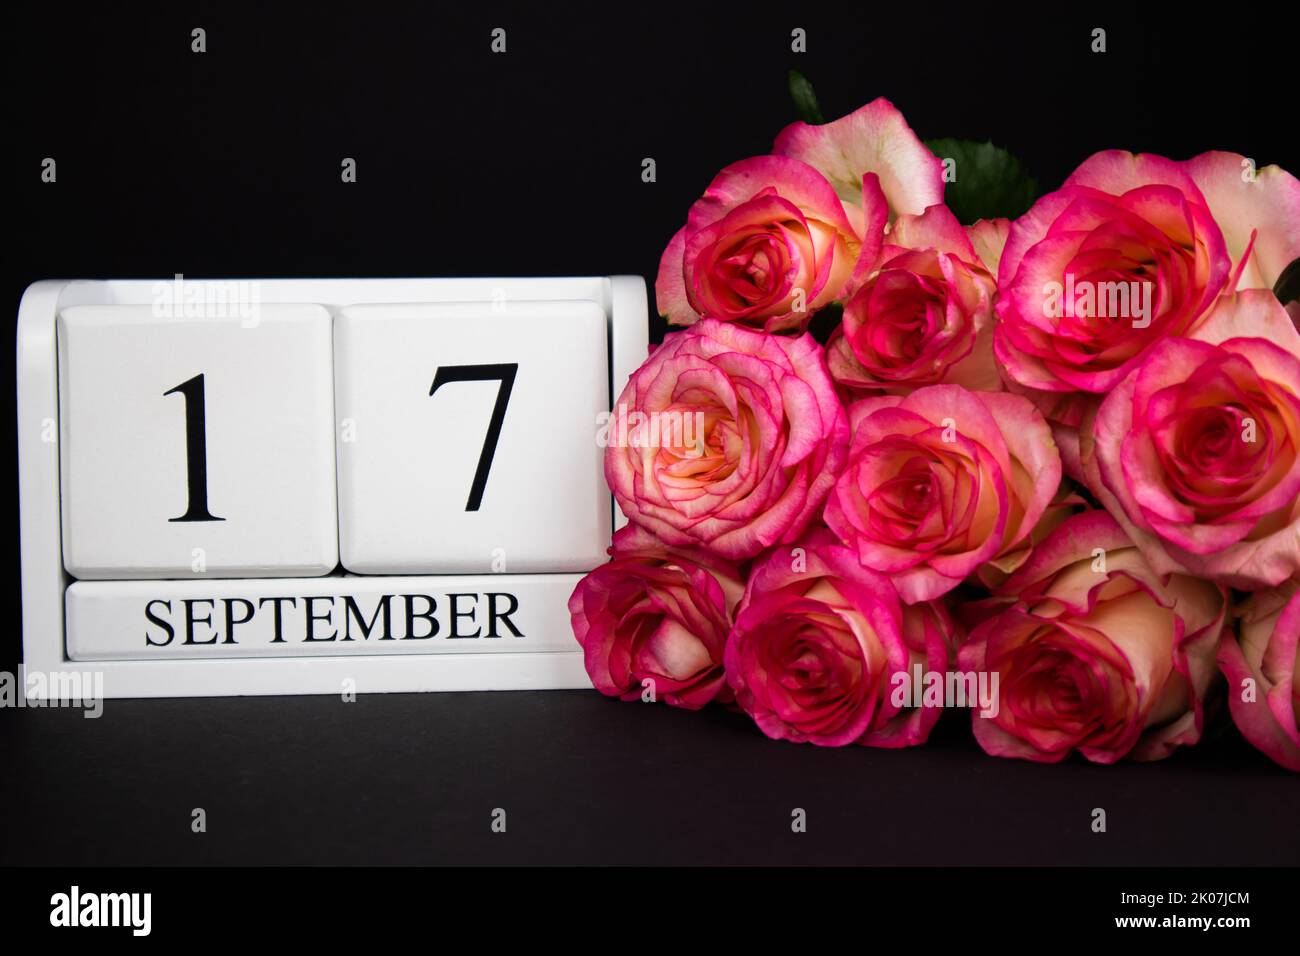 17 septembre calendrier en bois, blanc sur fond noir, roses se trouvent à proximité Banque D'Images